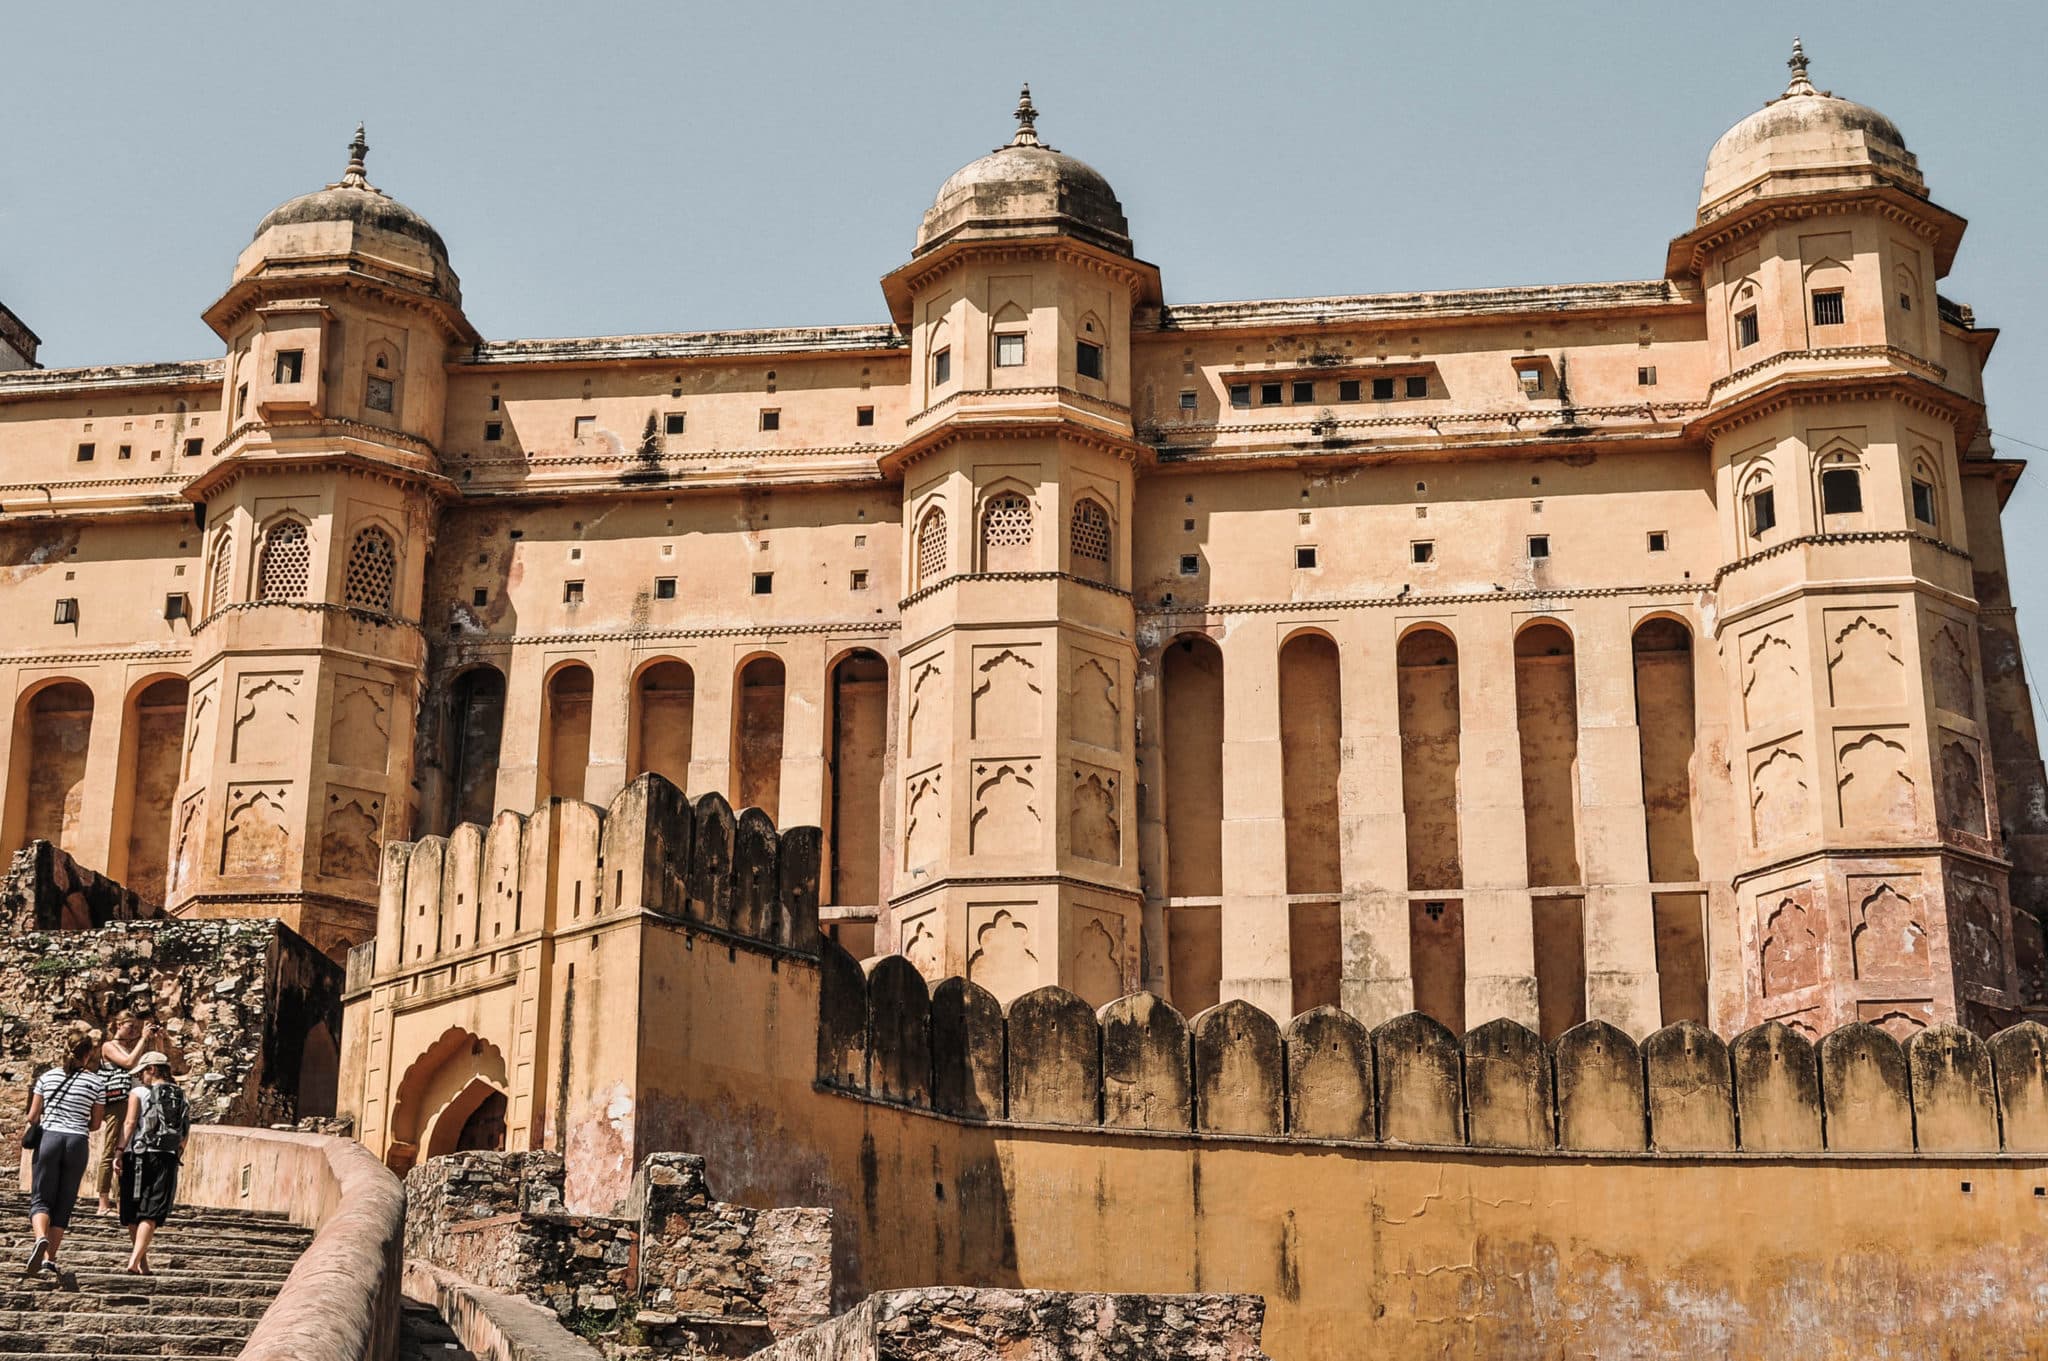 Le fort Amber dans la ville de Jaipur en Inde